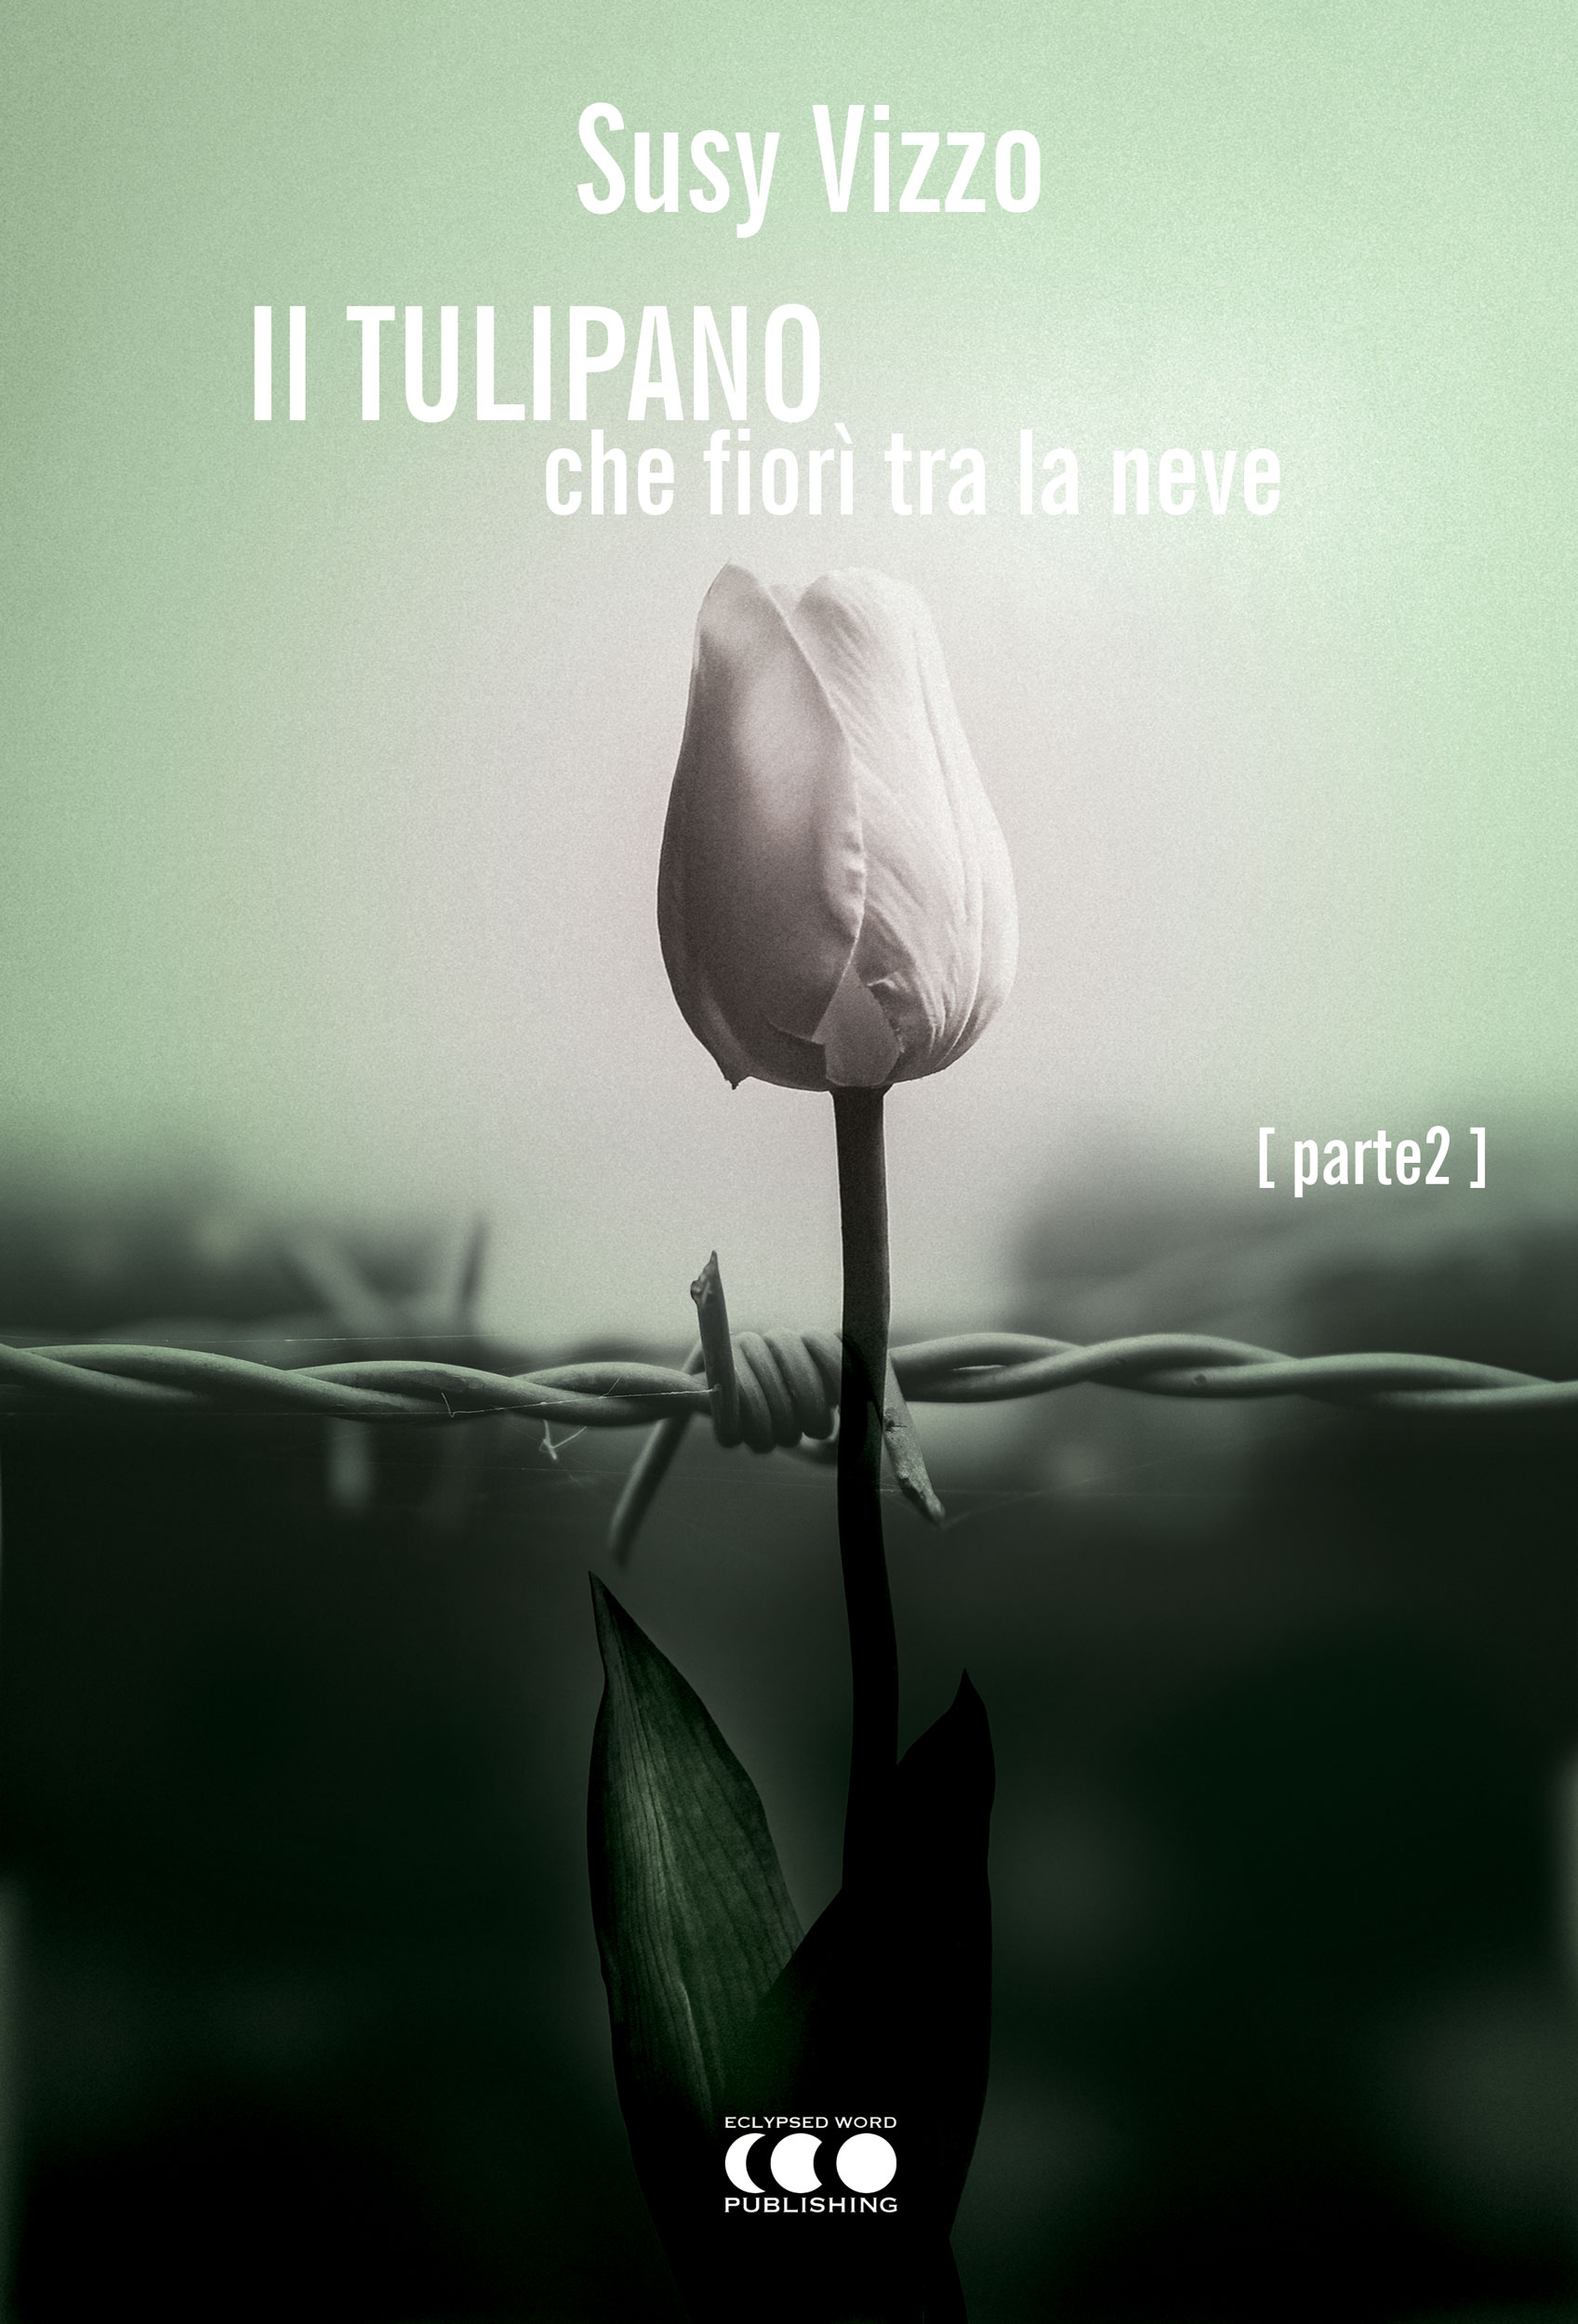 Foto 2 - Ancora consensi per “Il tulipano che fiorì tra la neve” di Susy Vizzo, presto in arrivo con una nuova opera